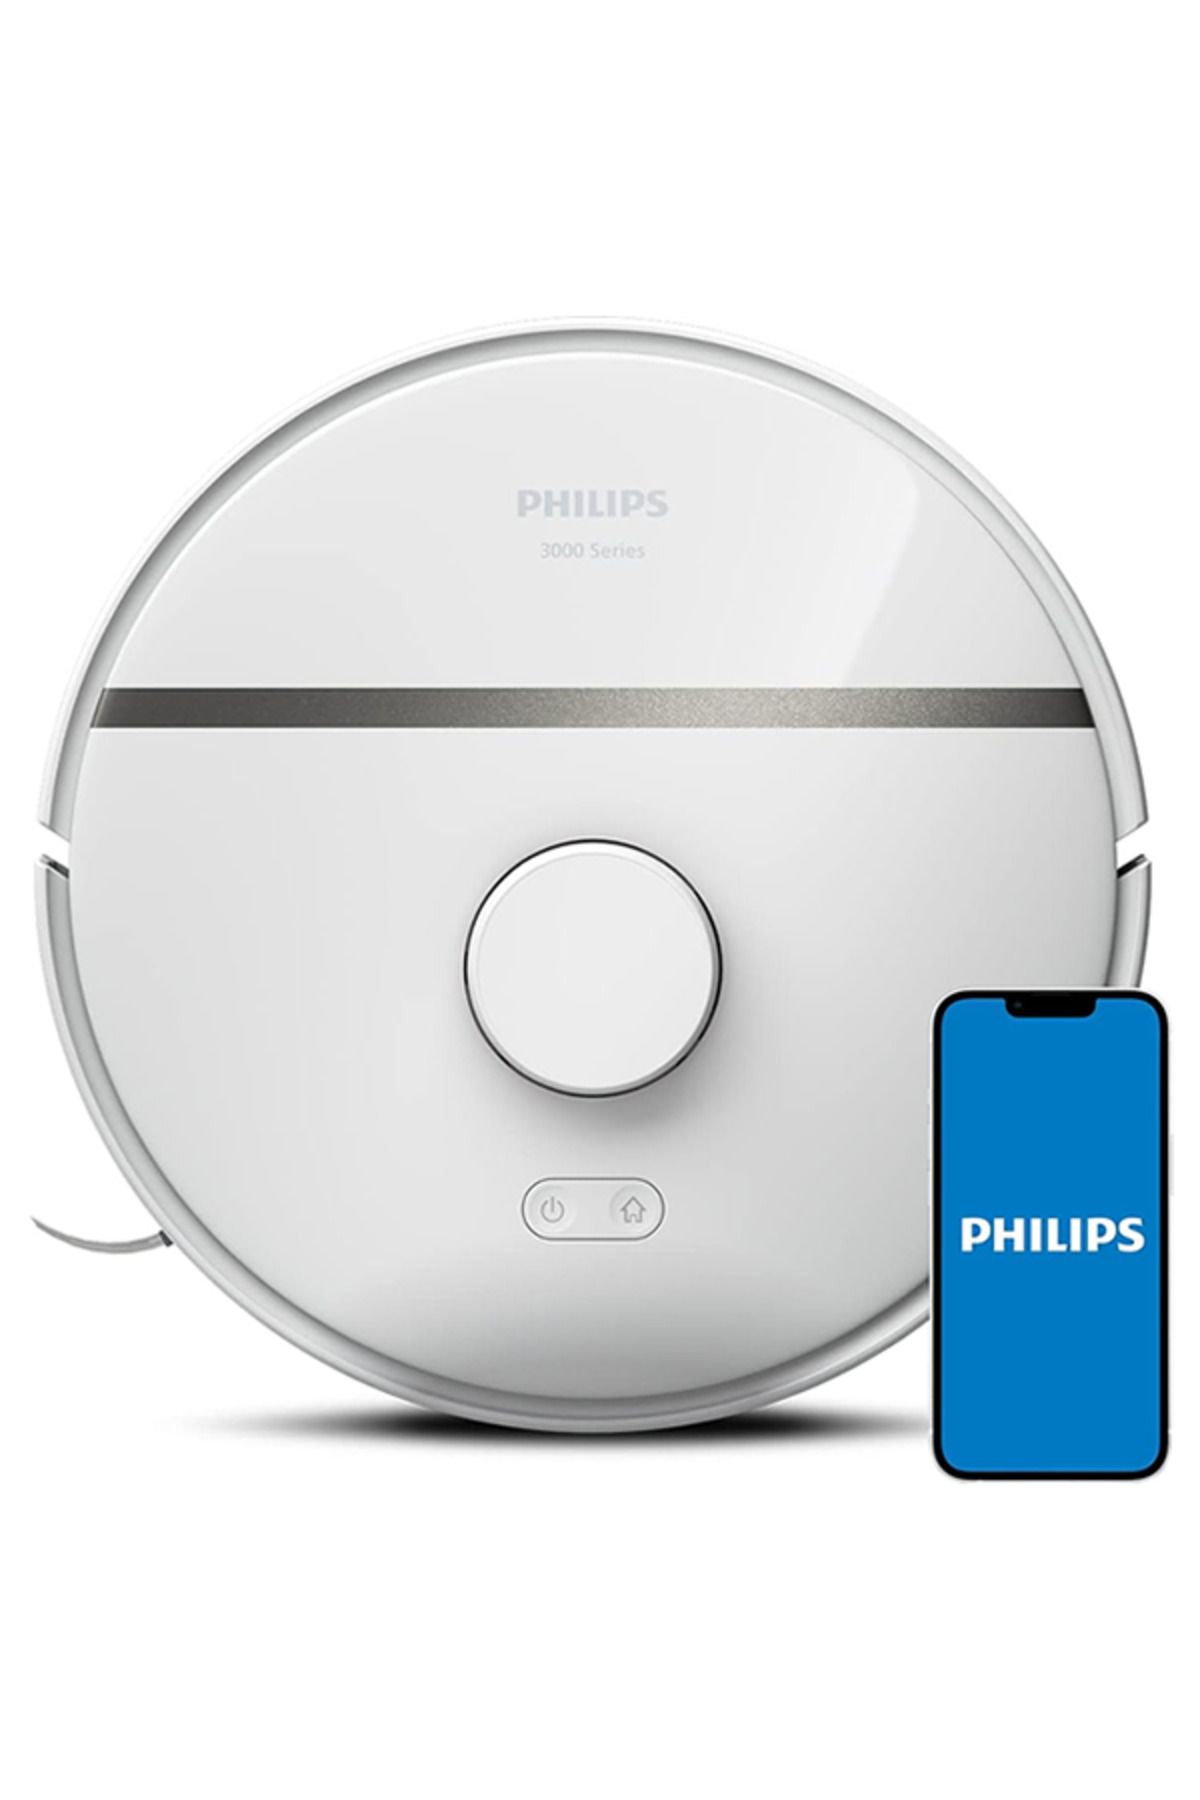 Philips 3000 Serisi Robot Süpürge, 4000 Pa, Mop, HomeRun Uygulaması ile Kişiselleştirilmiş Temizlik